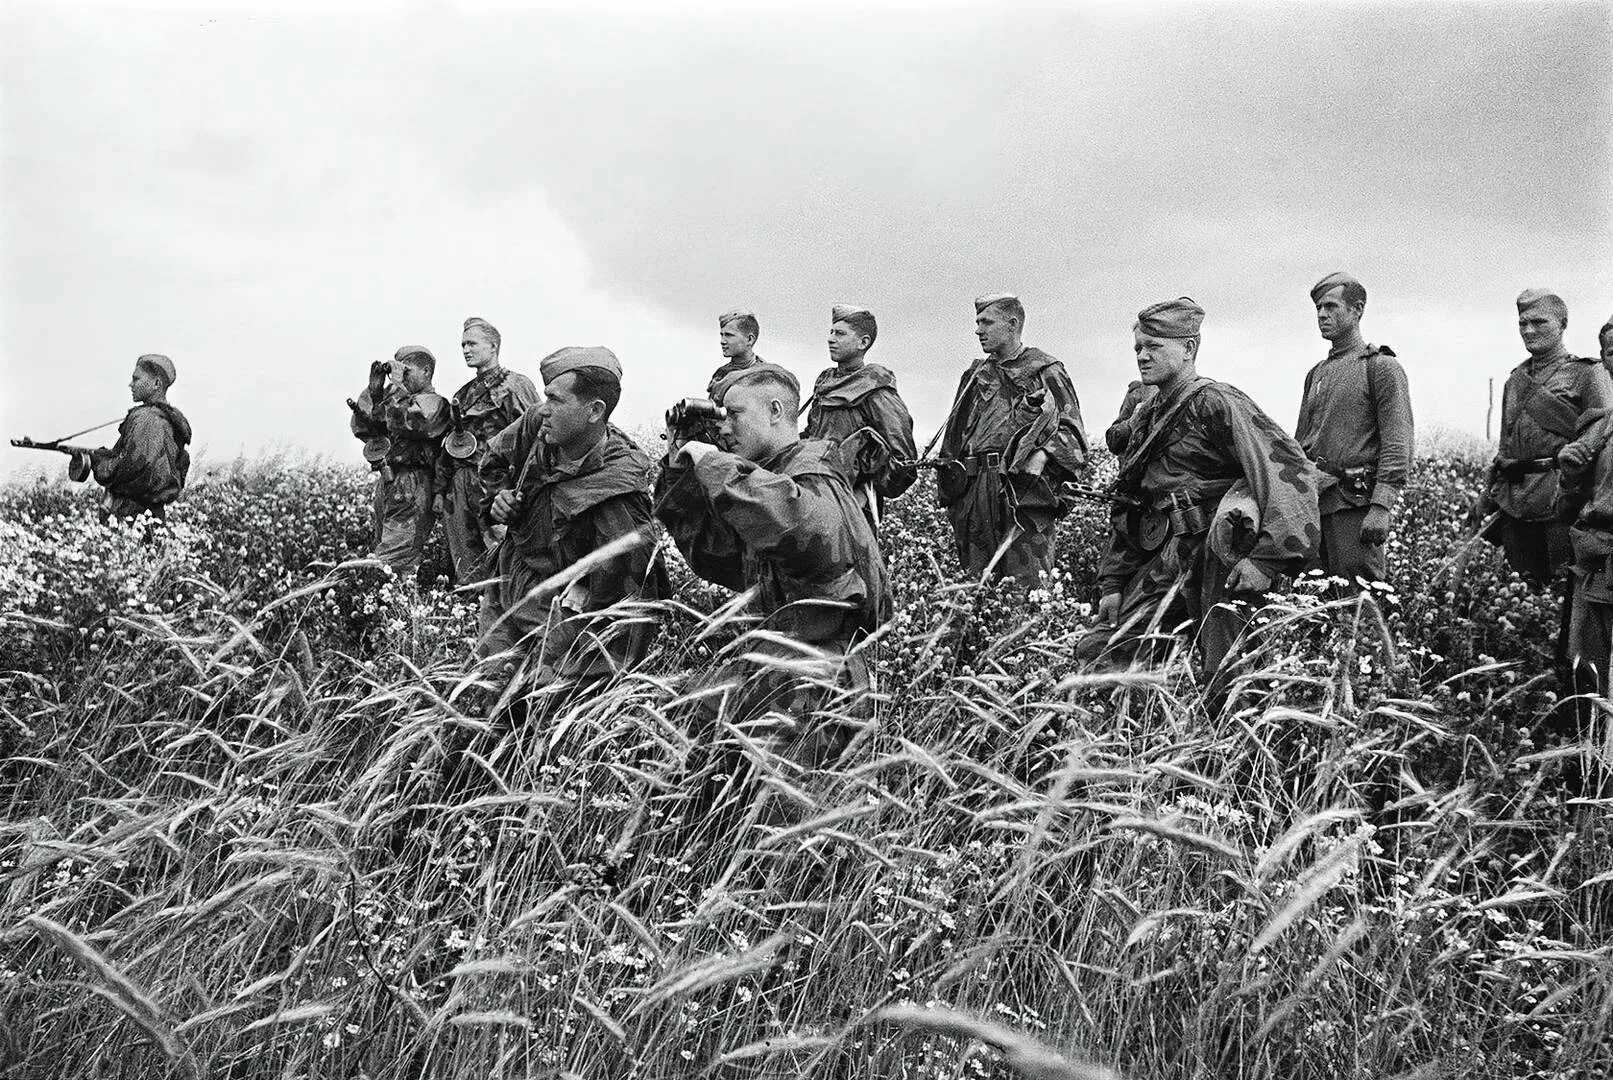 Летом 1944 г. Львовско Сандомирская операция 1944 года. Освобождение Западной Украины 1944. Льво́вско-Сандоми́рская опера́ция (13 июля — 29 августа 1944). Львовско-Сандомирская операция (13 июля — 29 августа 1944).